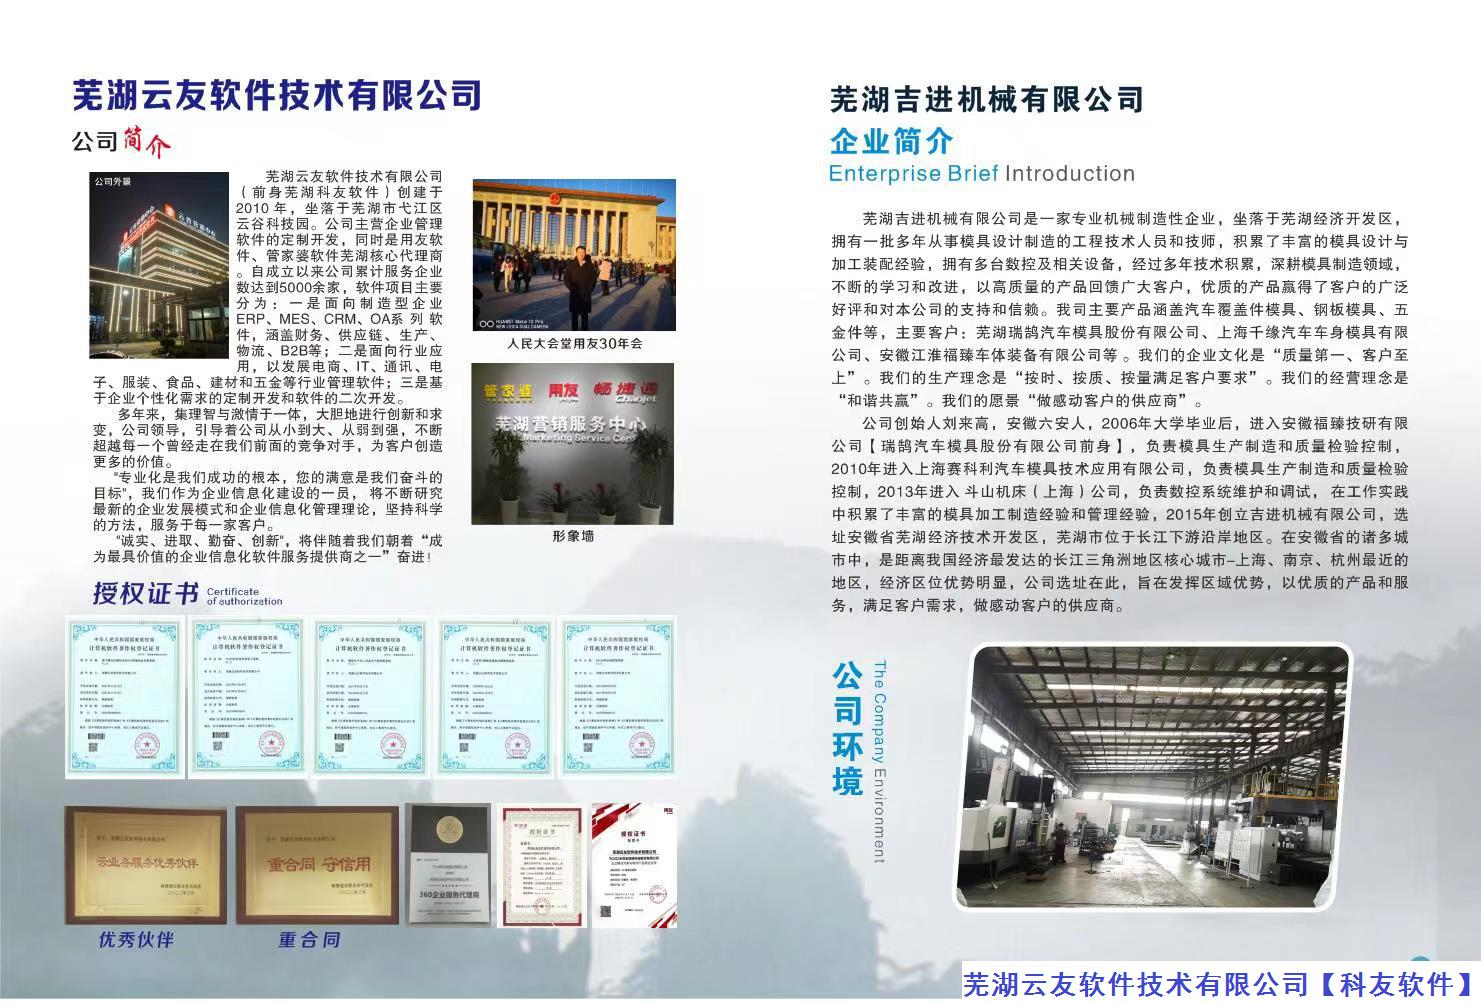 2022年11月6日芜湖六安商会十周年庆典在海螺国际大酒店举办的通知